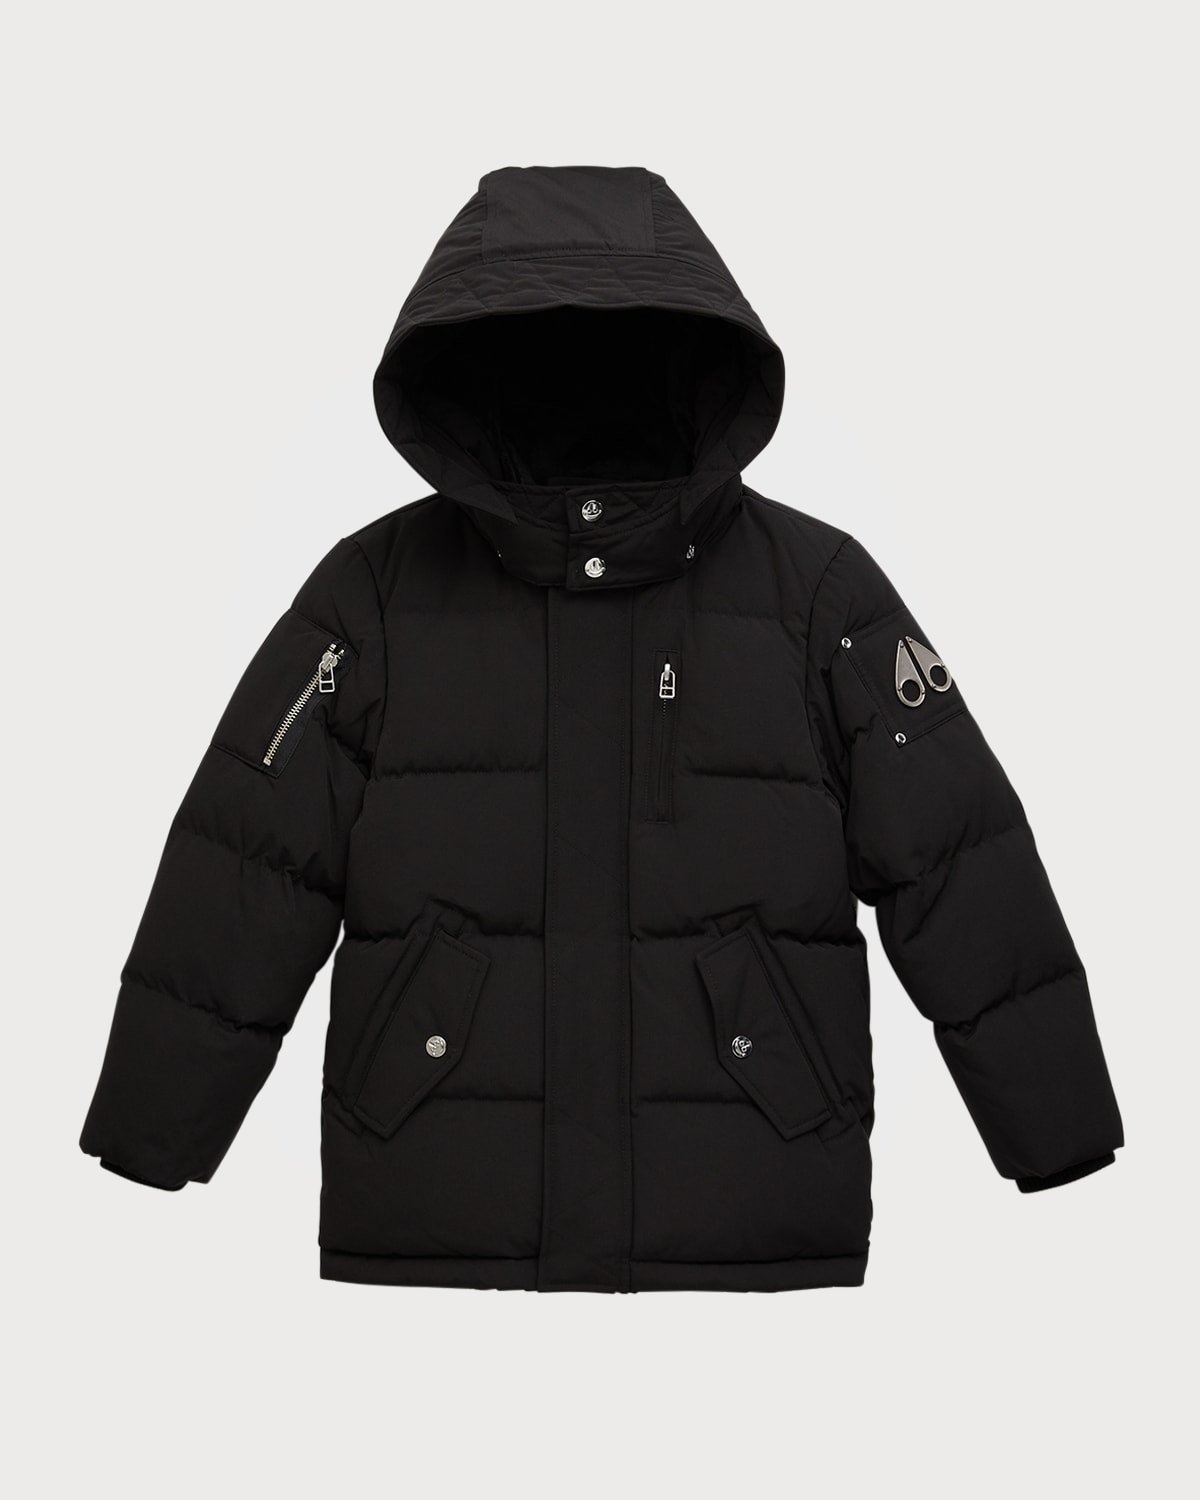 Moose Knuckles Kid's Water-resistant Detachable Hooded Coat In Black